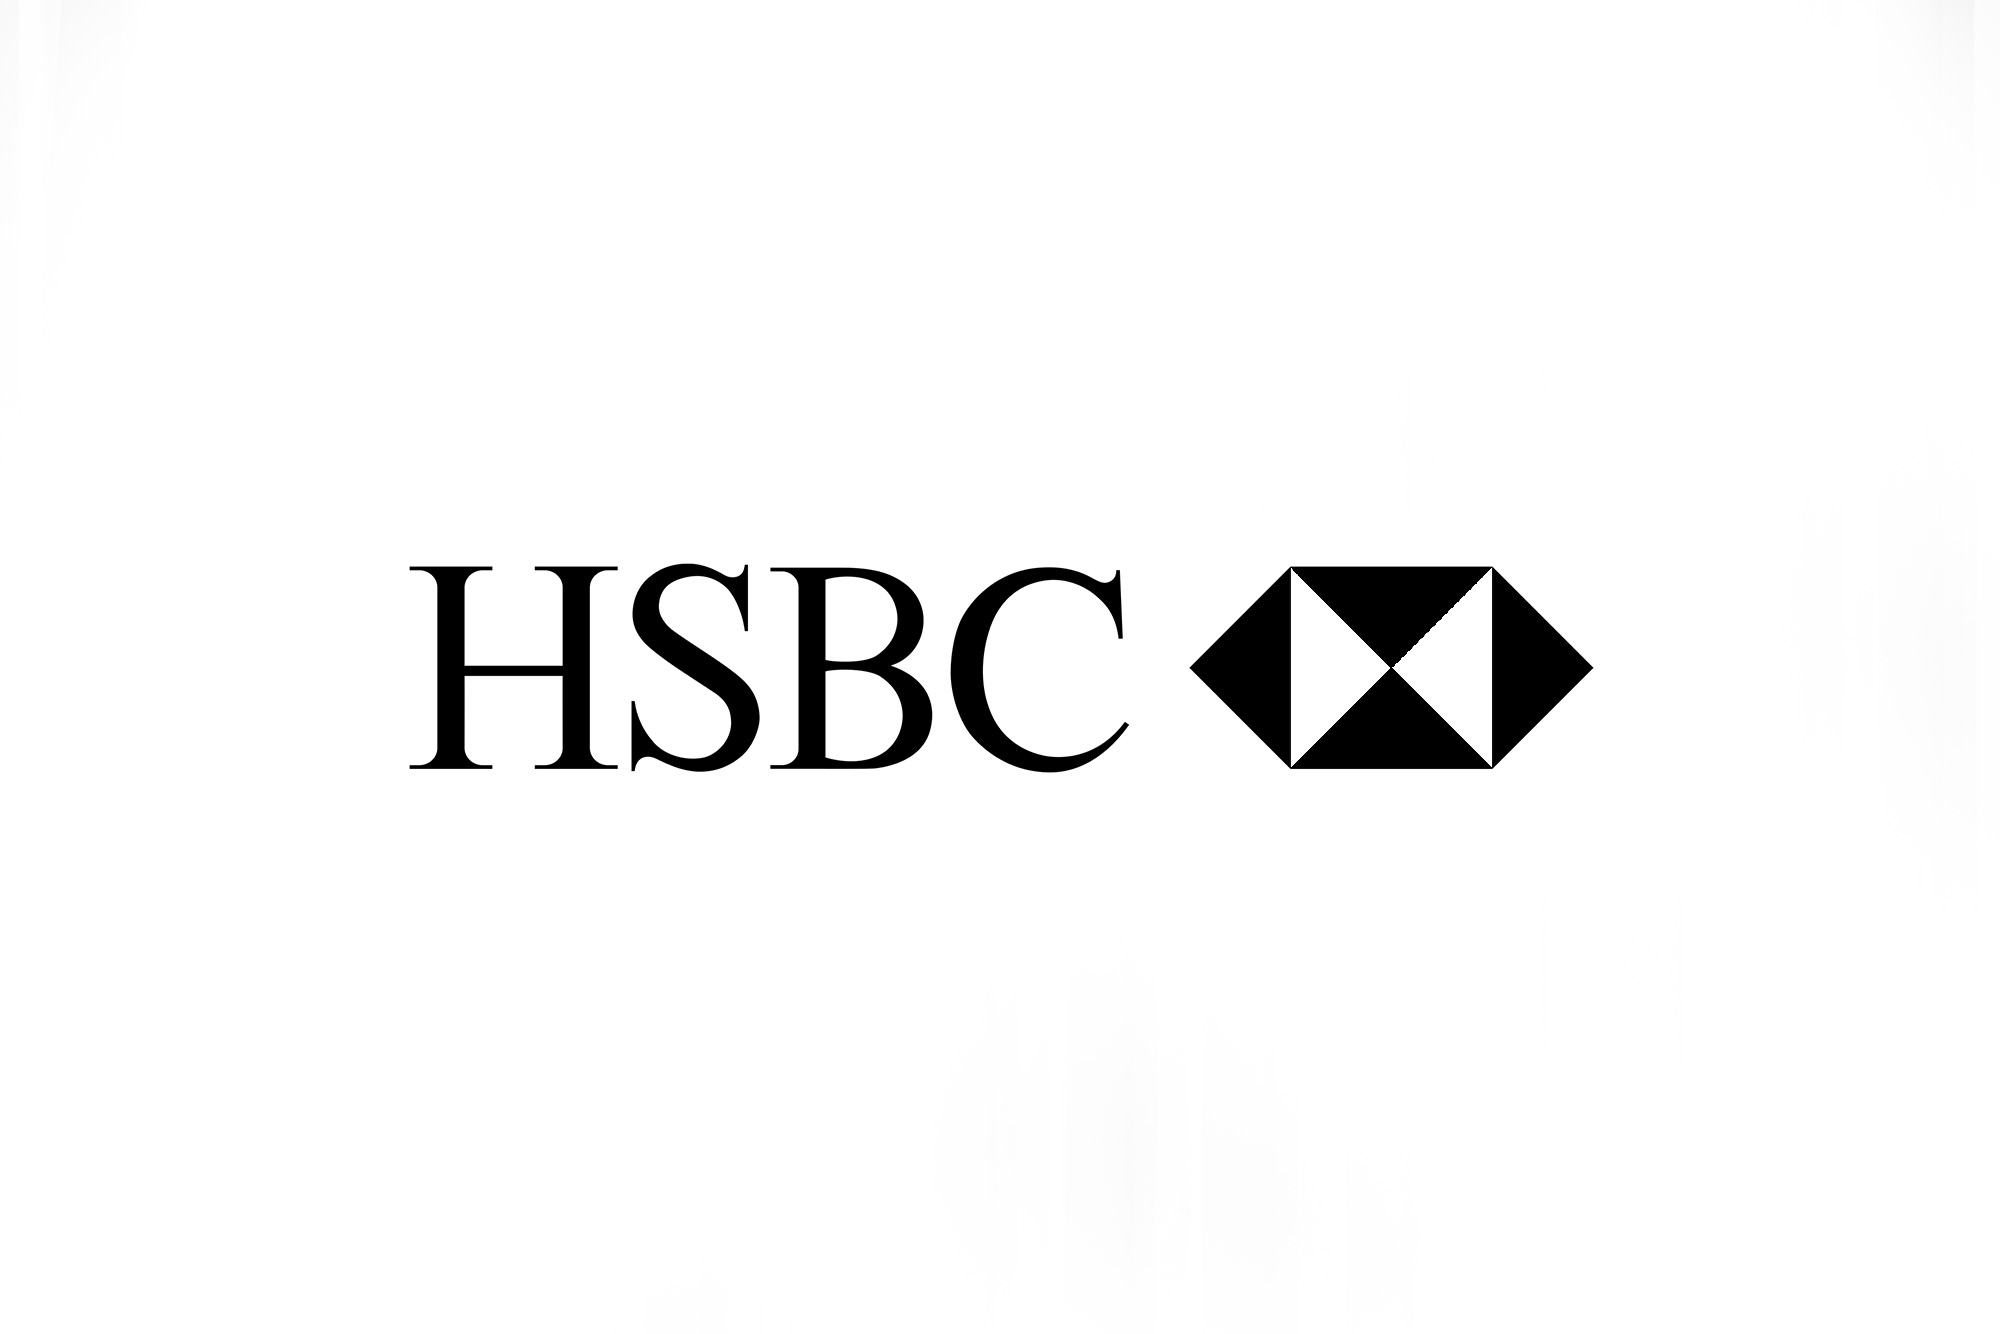 HSBC.jpg